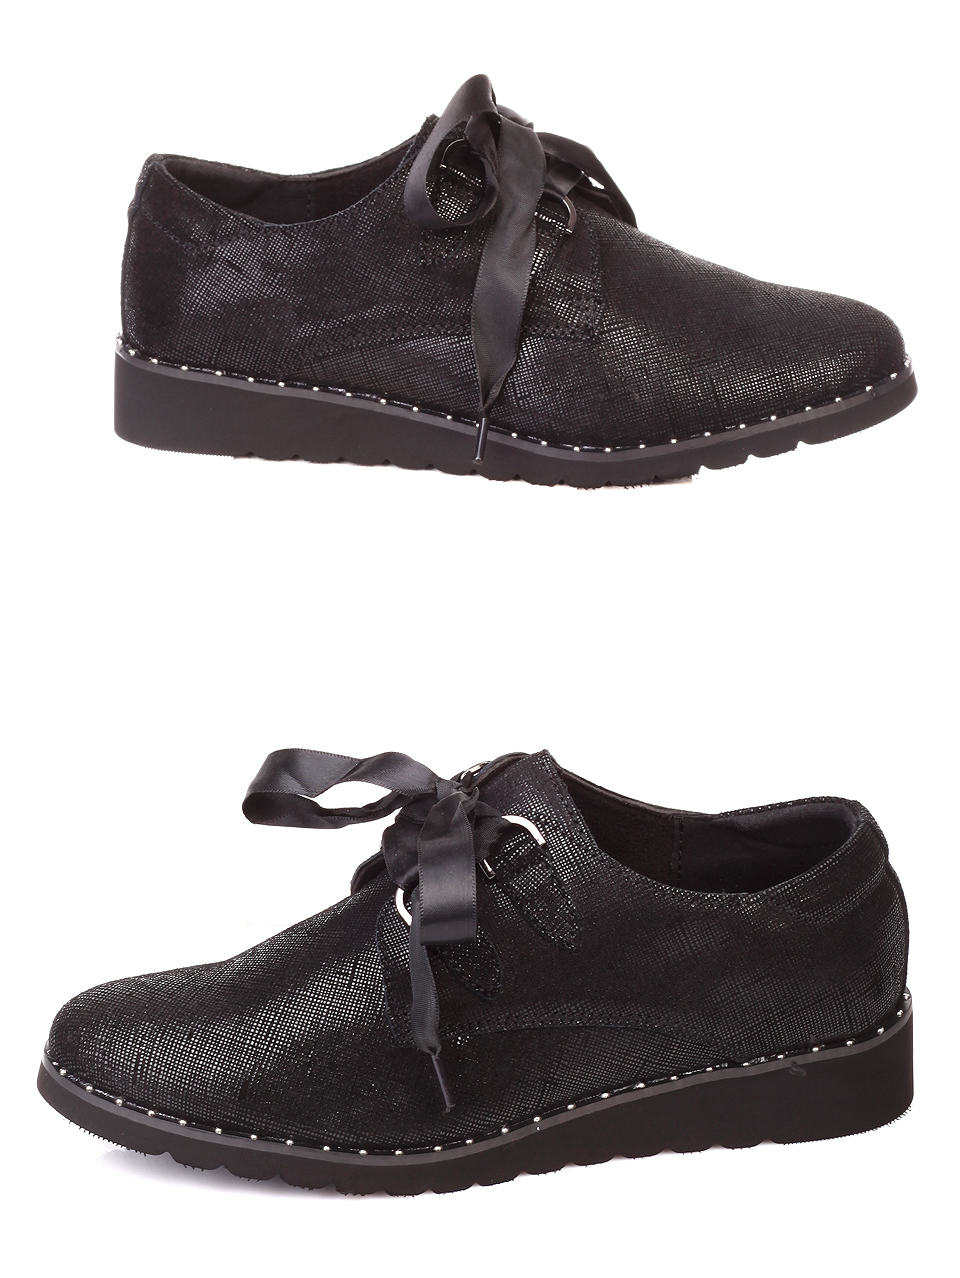 Ежедневни дамски обувки от естествен велур в черно 3AF-19802 black 